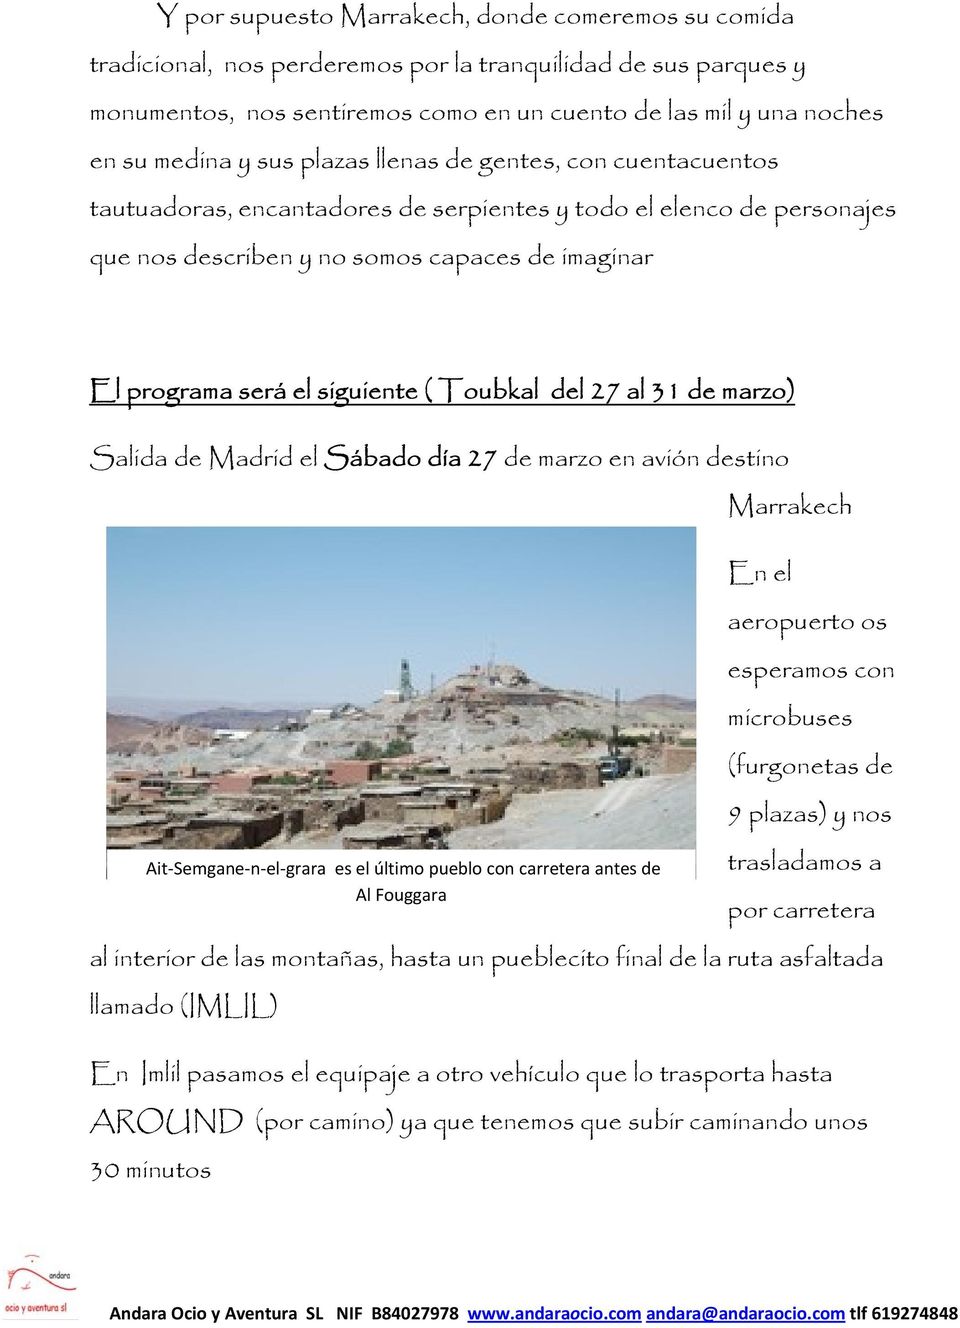 ( Toubkal del 27 al 31 de marzo) Salida de Madrid el Sábado día 27 de marzo en avión destino Ait Semgane n el grara es el último pueblo con carretera antes de Al Fouggara Marrakech En el aeropuerto